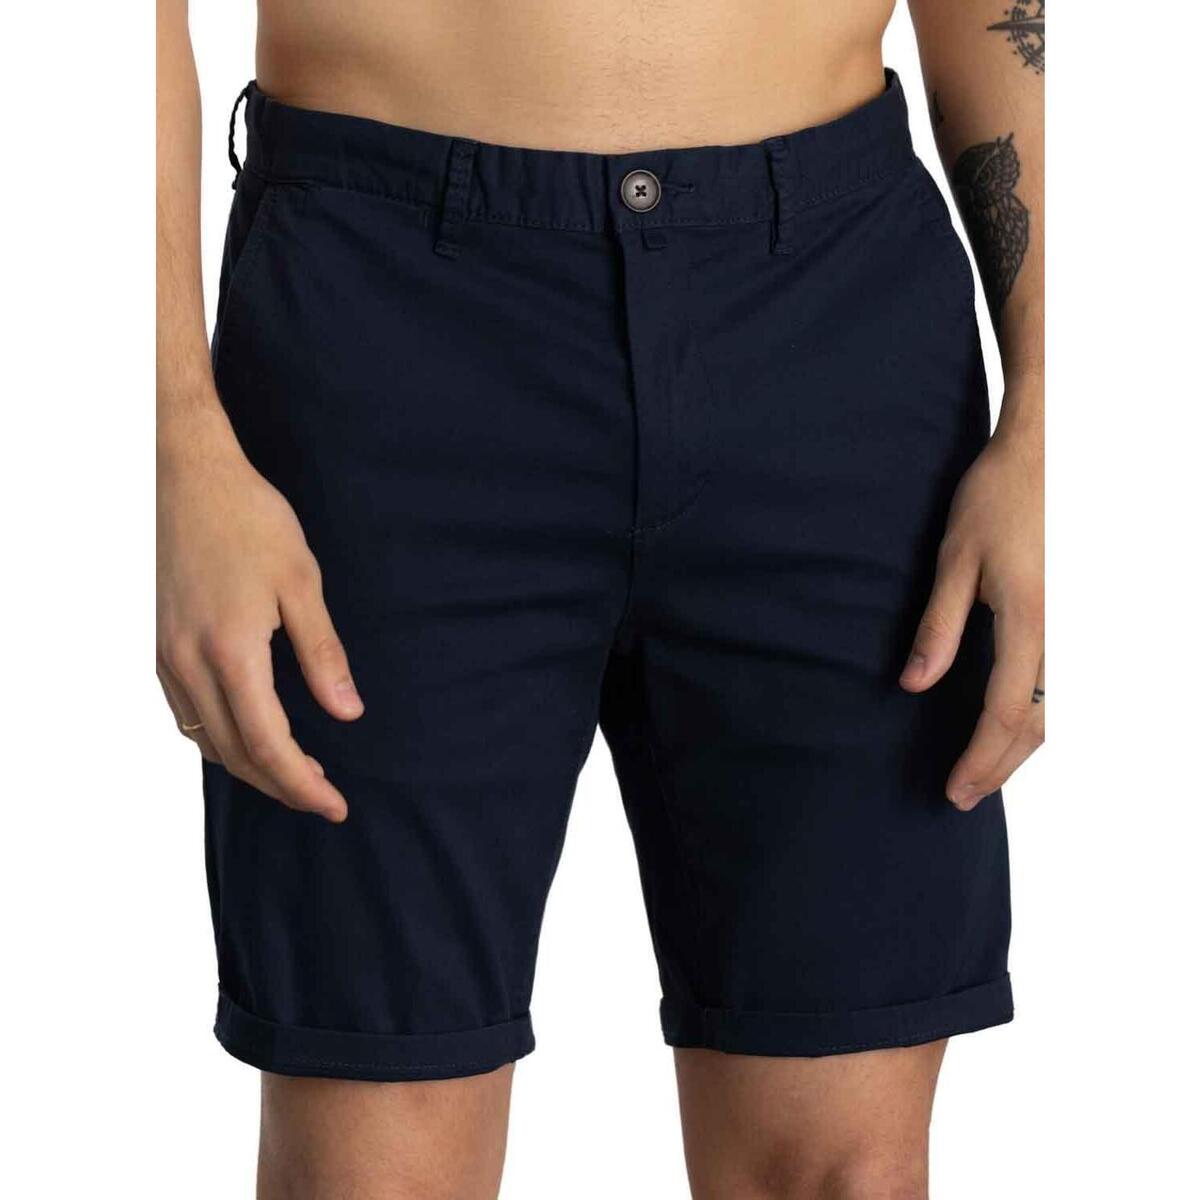 Kleidung Shorts / Bermudas Klout  Blau